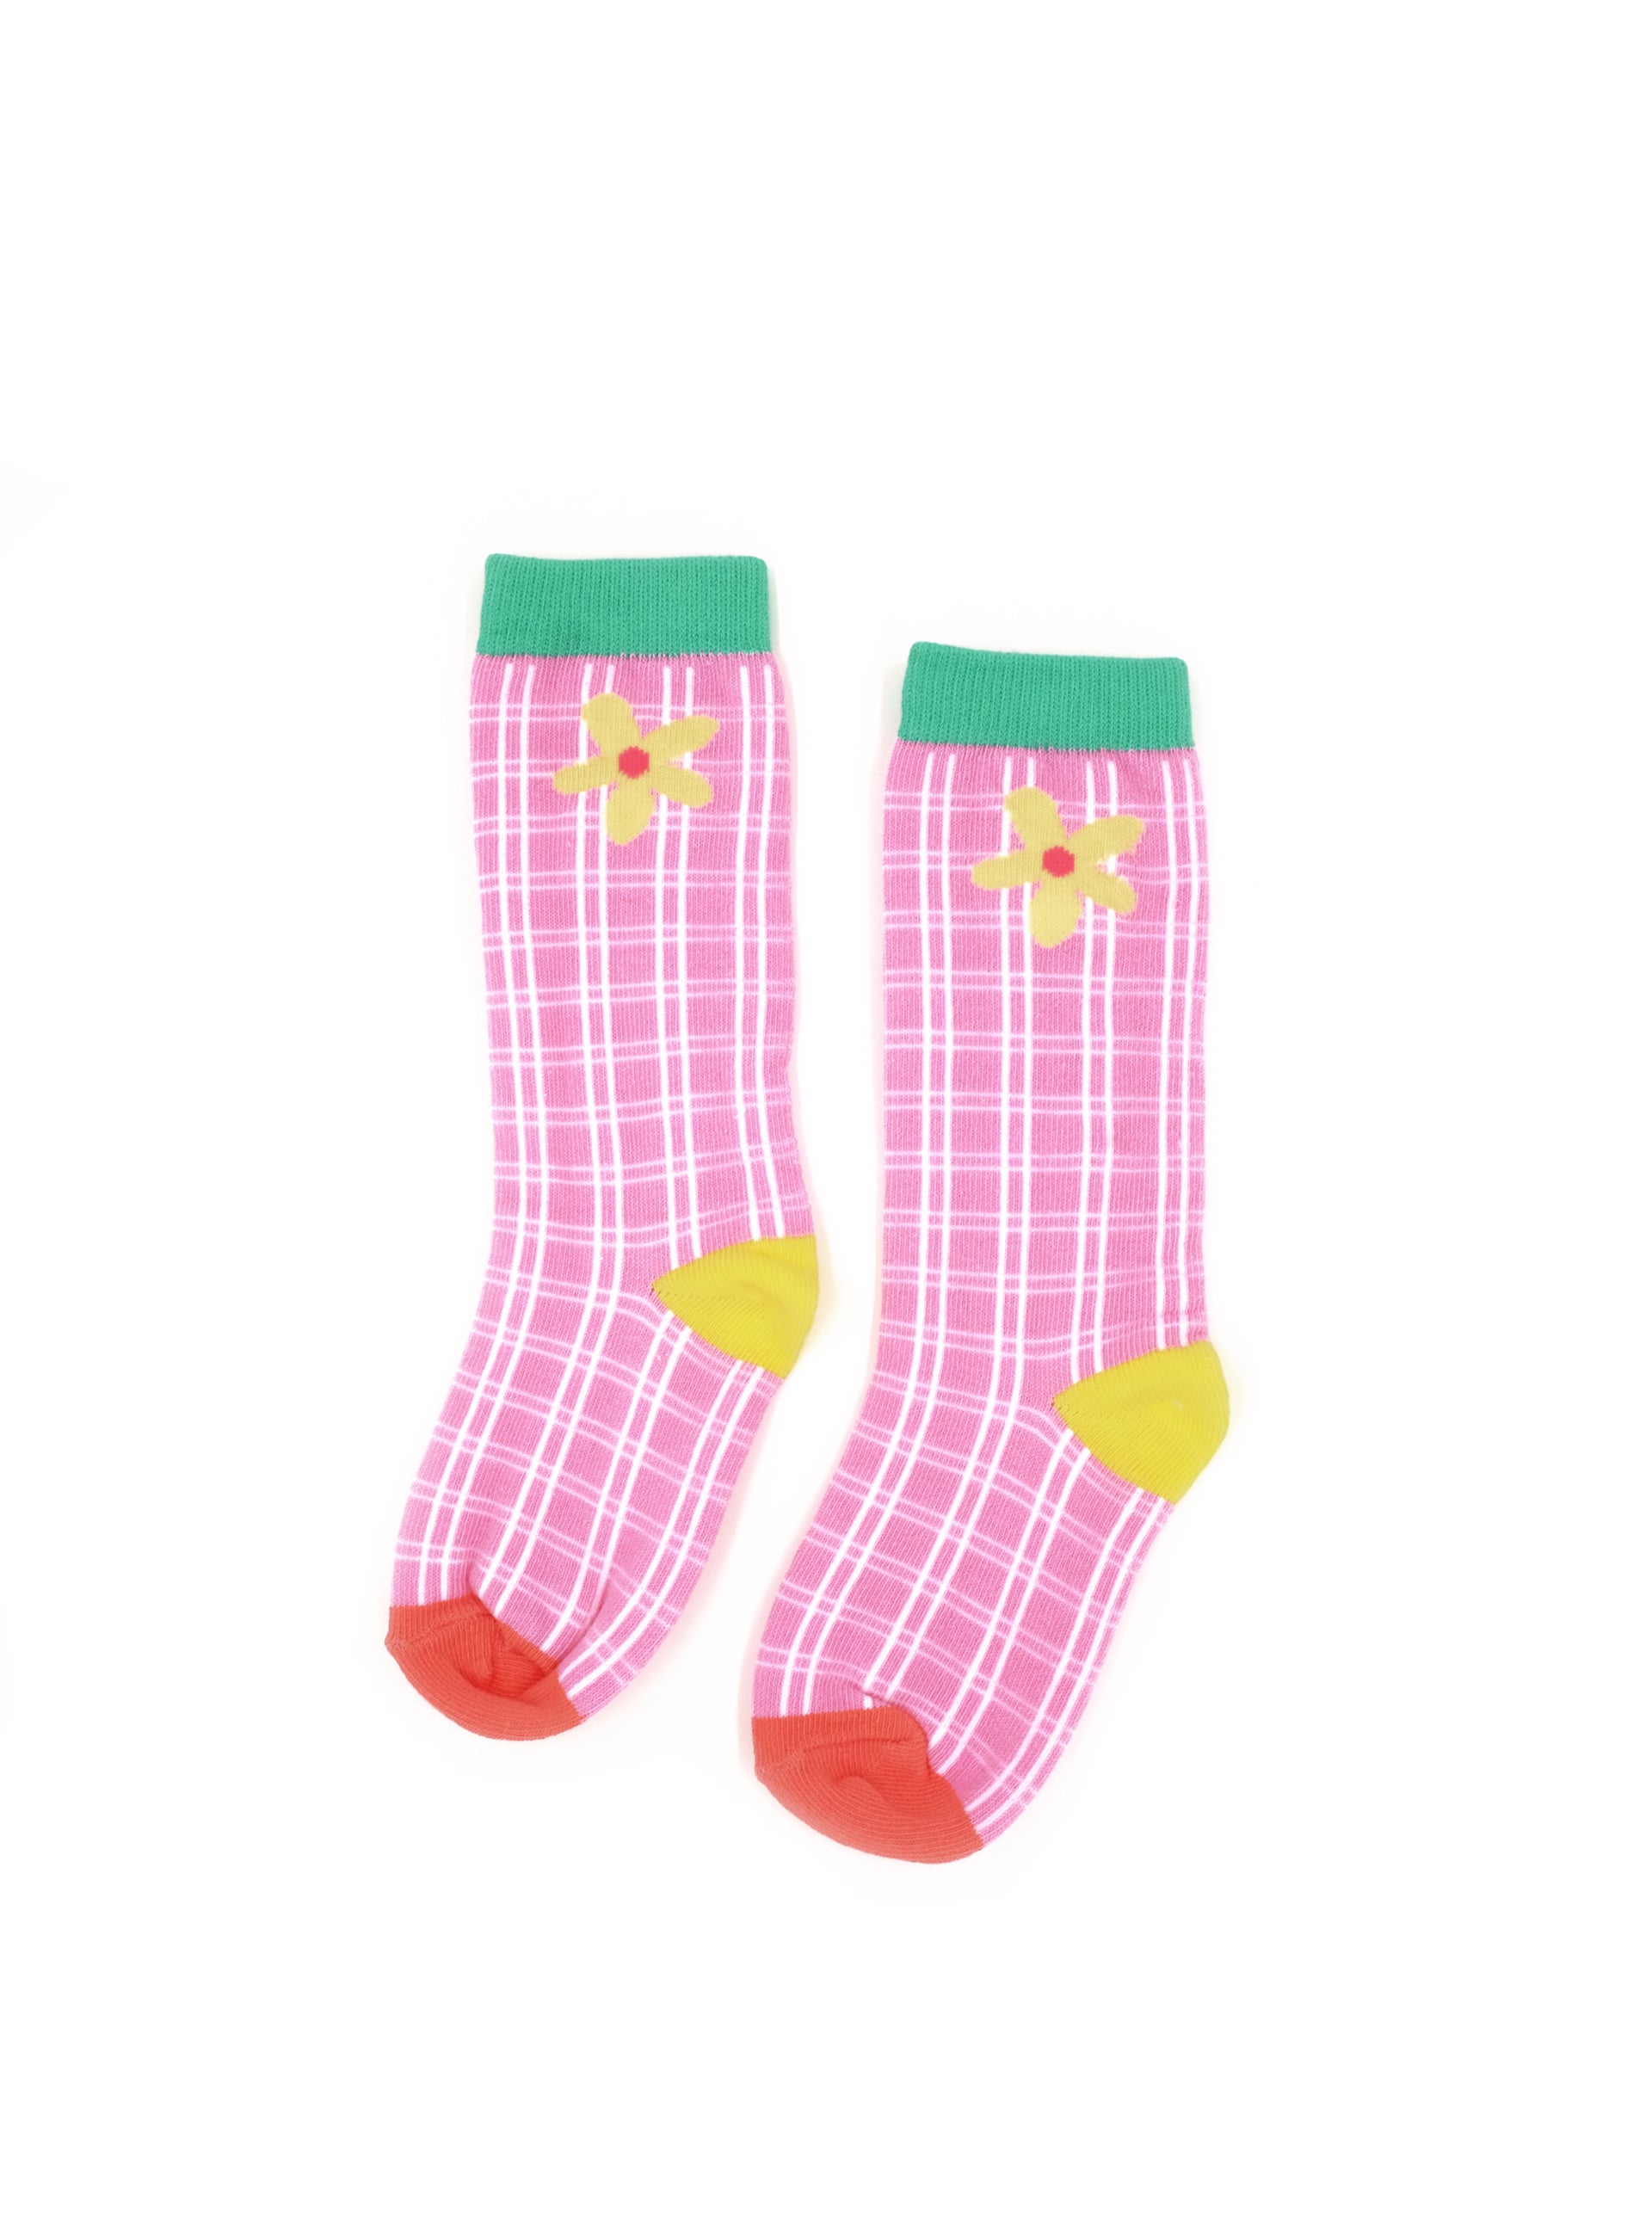 in hot pink we trust pair of socks